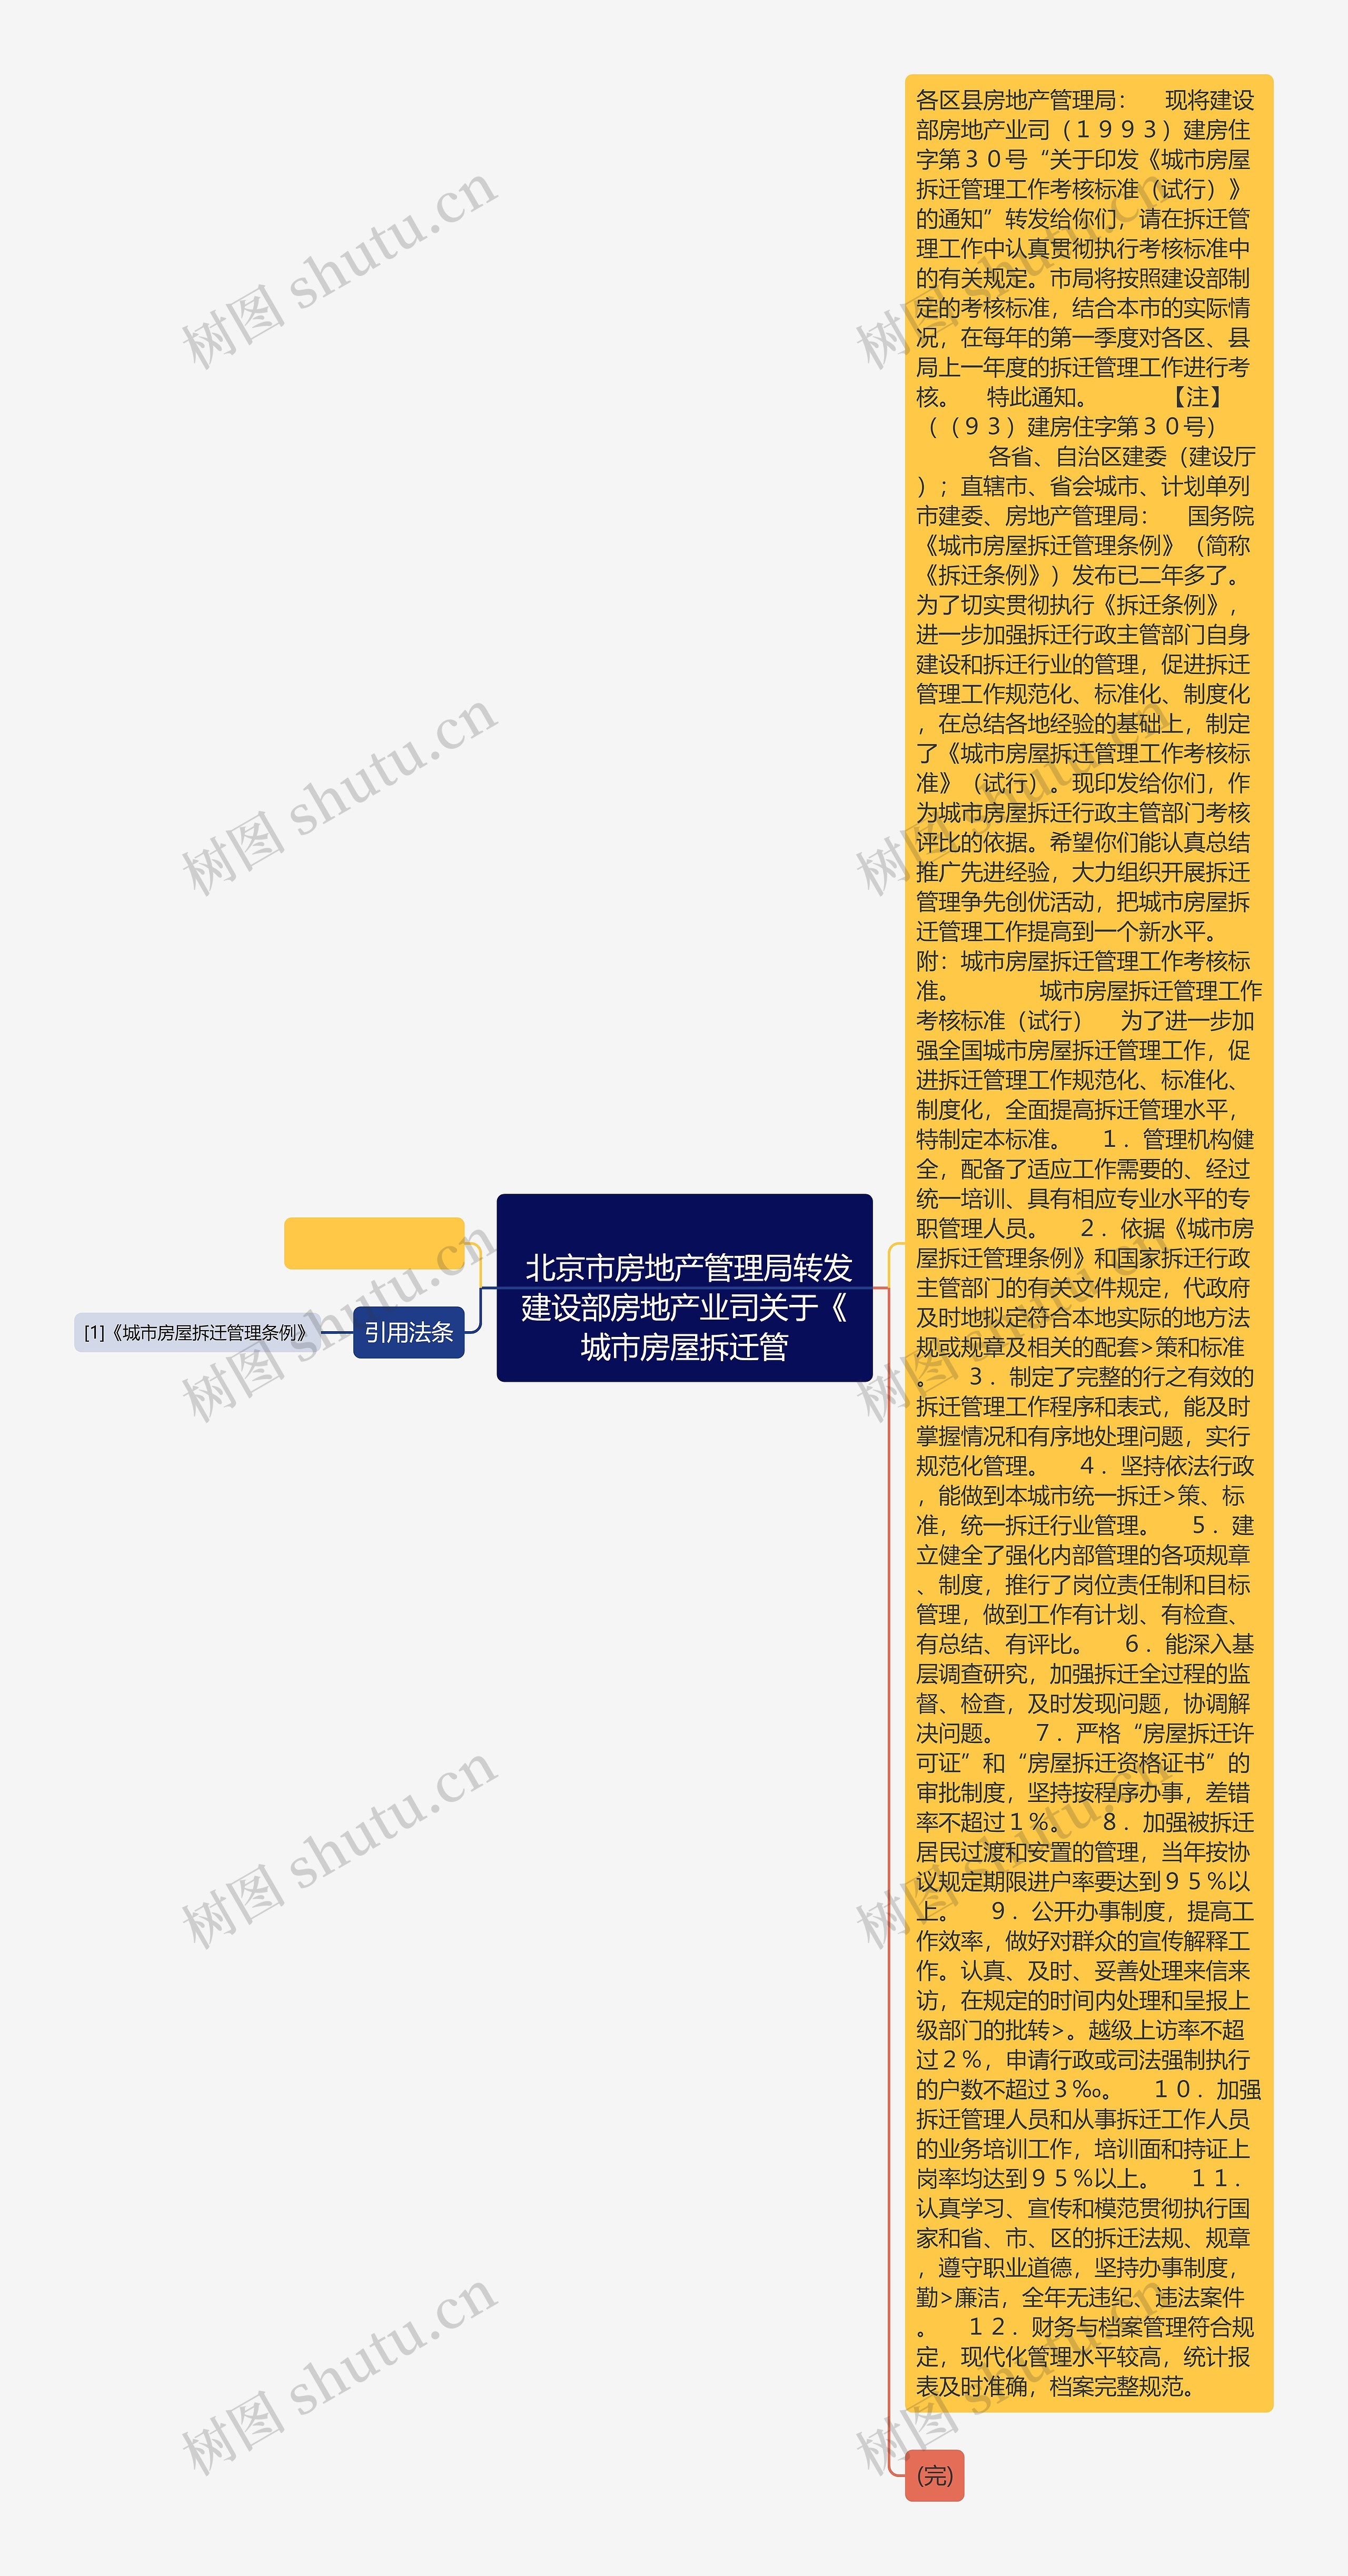 
	北京市房地产管理局转发建设部房地产业司关于《城市房屋拆迁管